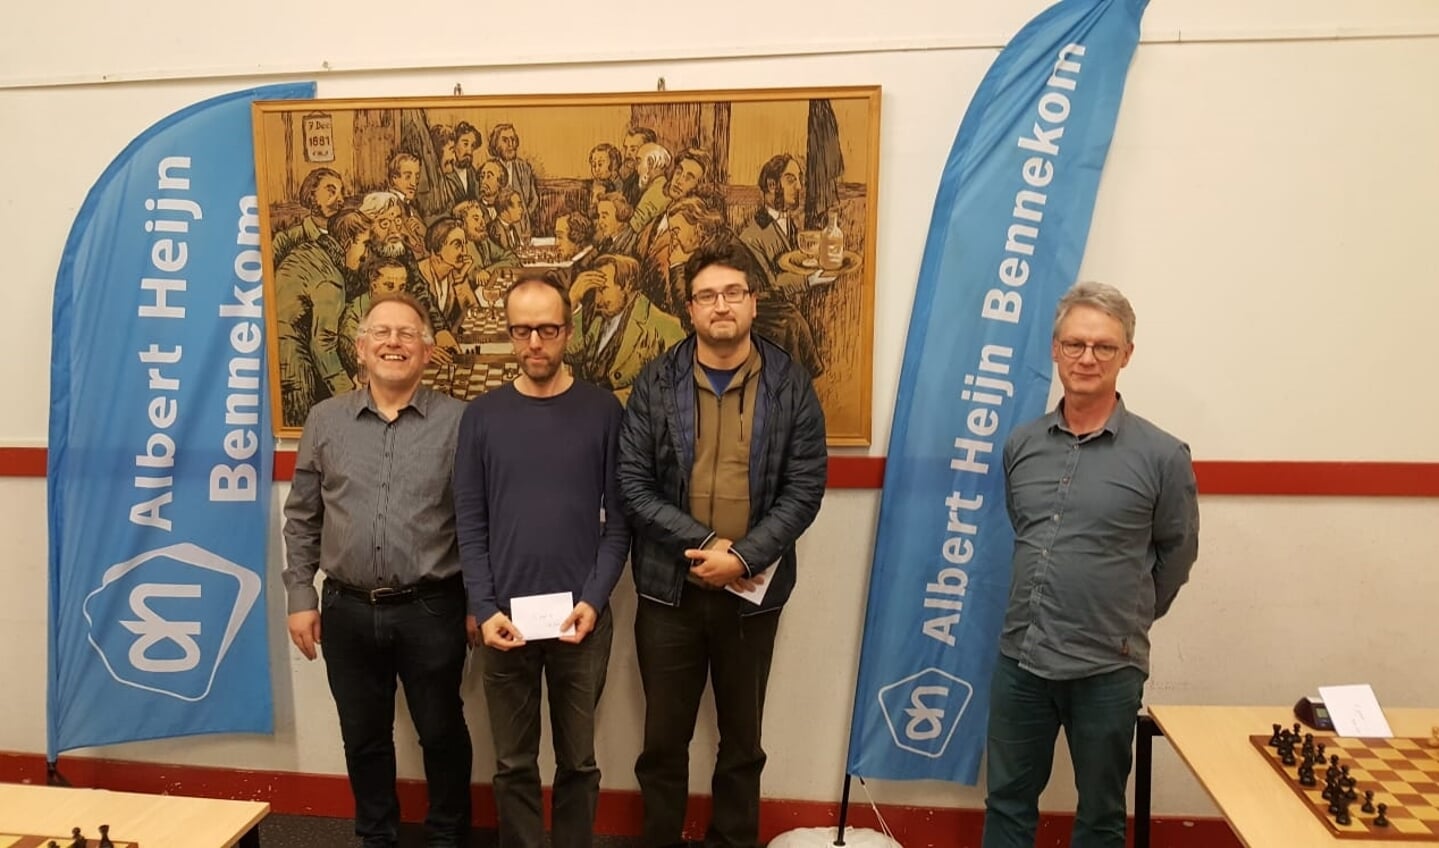 De prijsuitreiking met van links naar rechts BSV-voorzitter Teunis Bunt, Erik van den Doel (tweede), Andrey Orlov (winnaar) en arbiter Huub Blom.